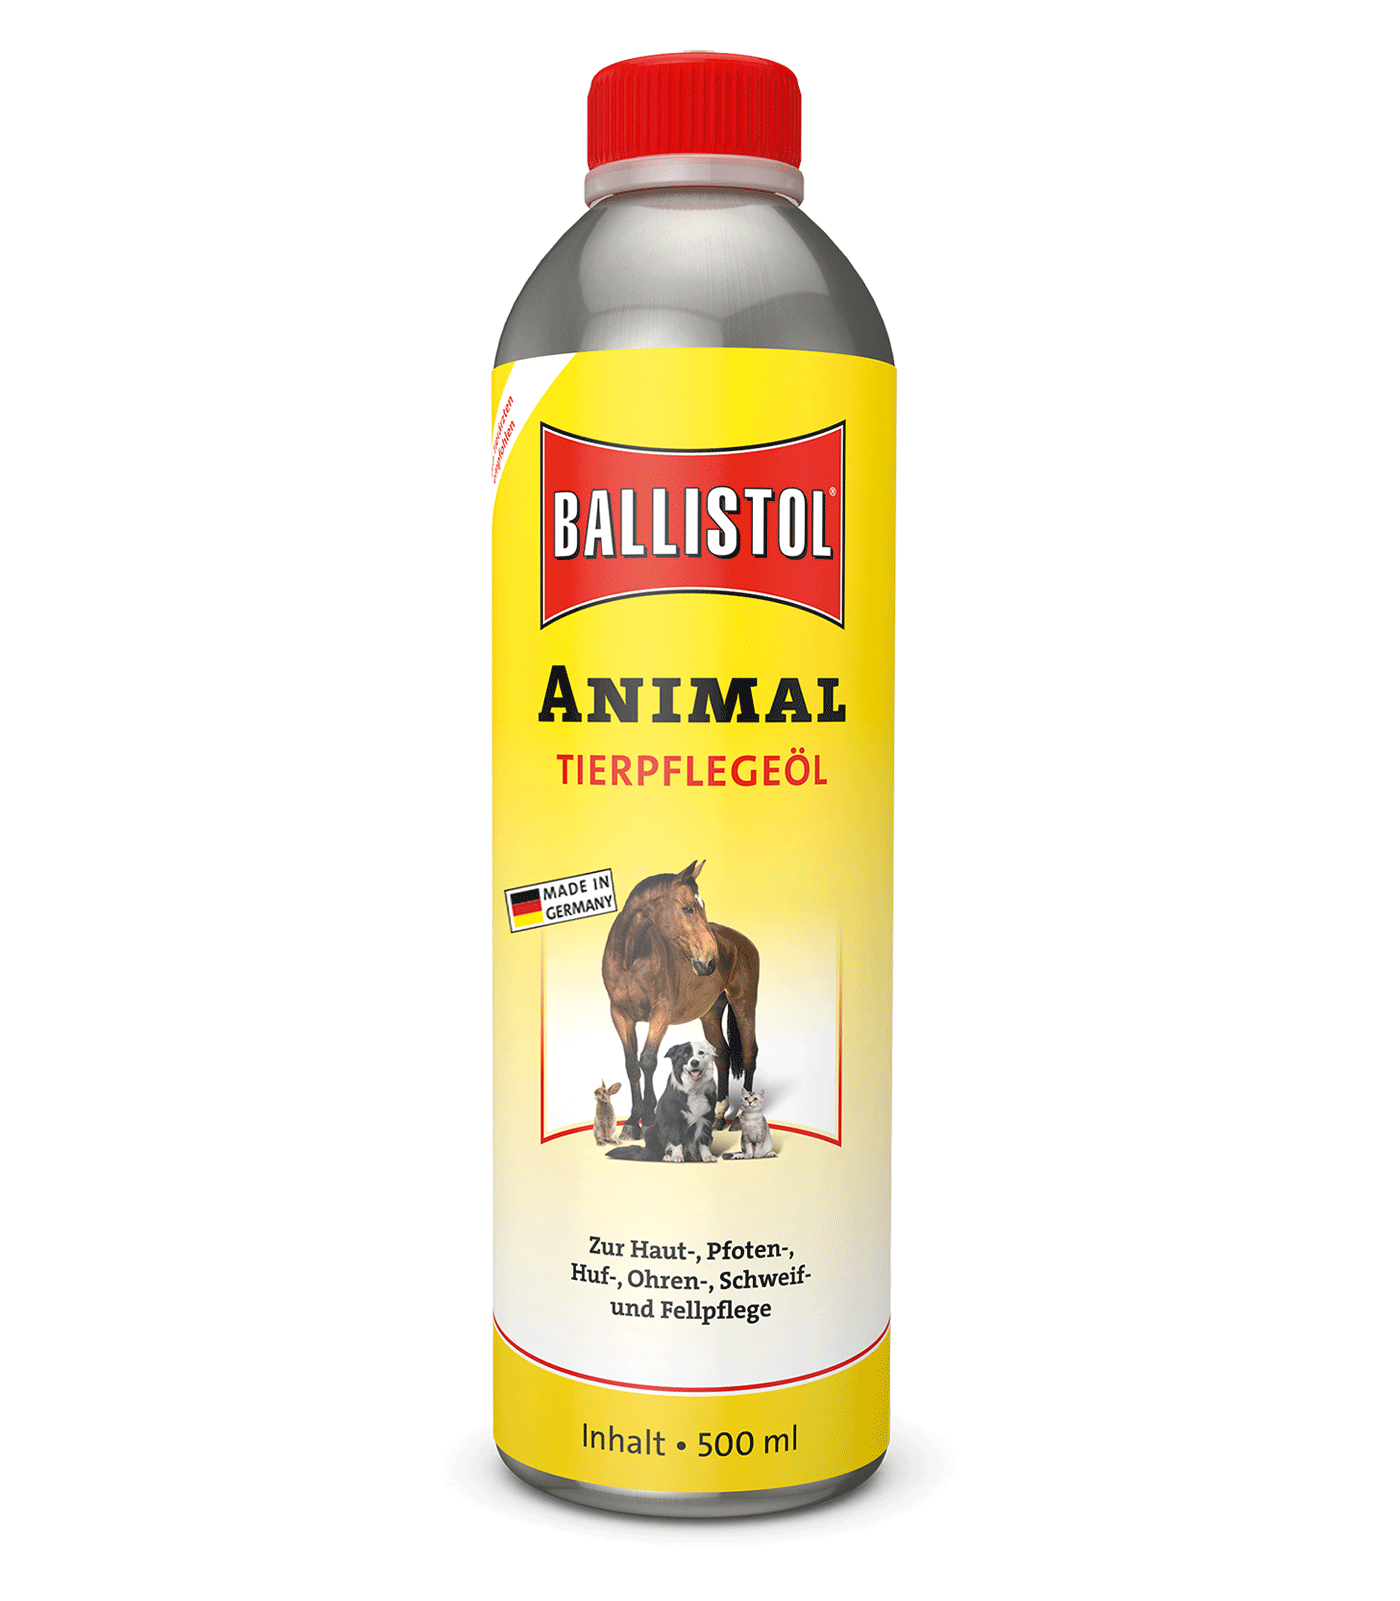 Ballistol animal care oil, 500 ml